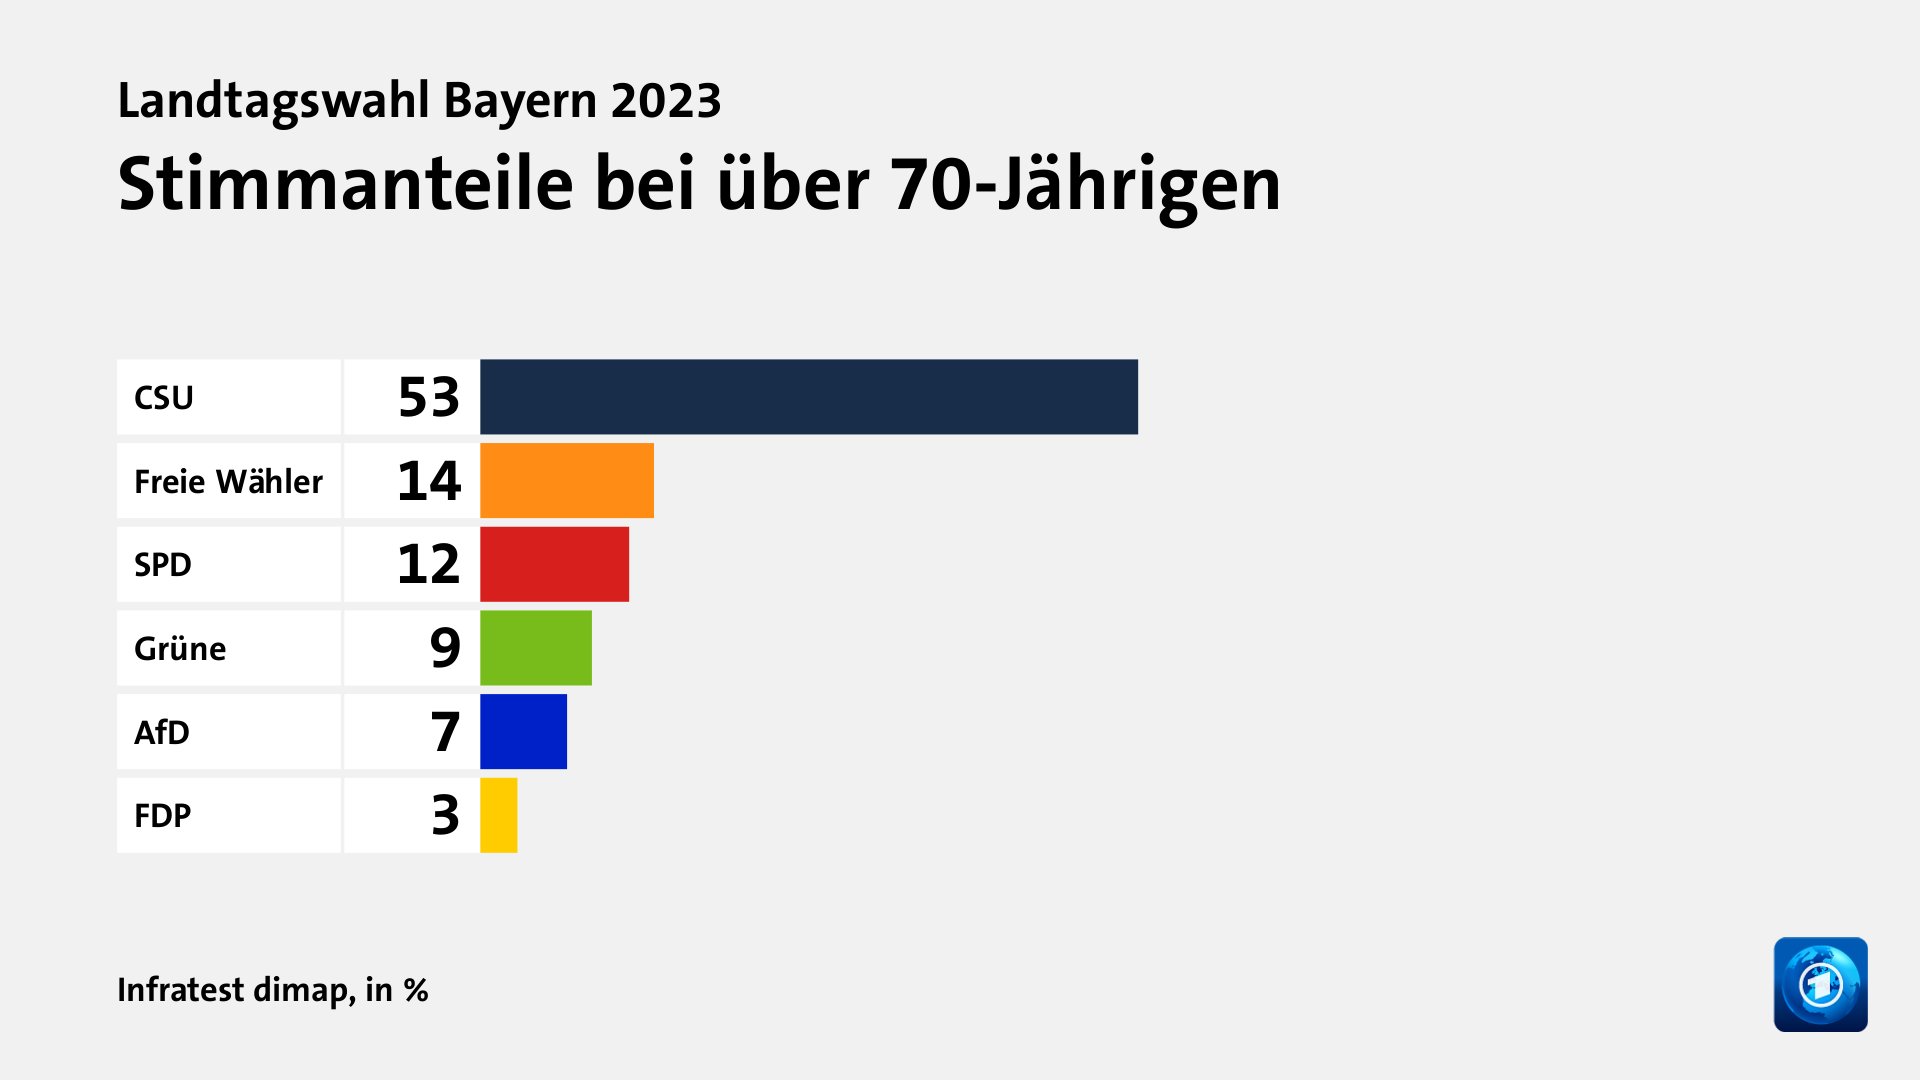 Stimmanteile bei über 70-Jährigen, in %: CSU 53, Freie Wähler 14, SPD 12, Grüne 9, AfD 7, FDP 3, Quelle: Infratest dimap